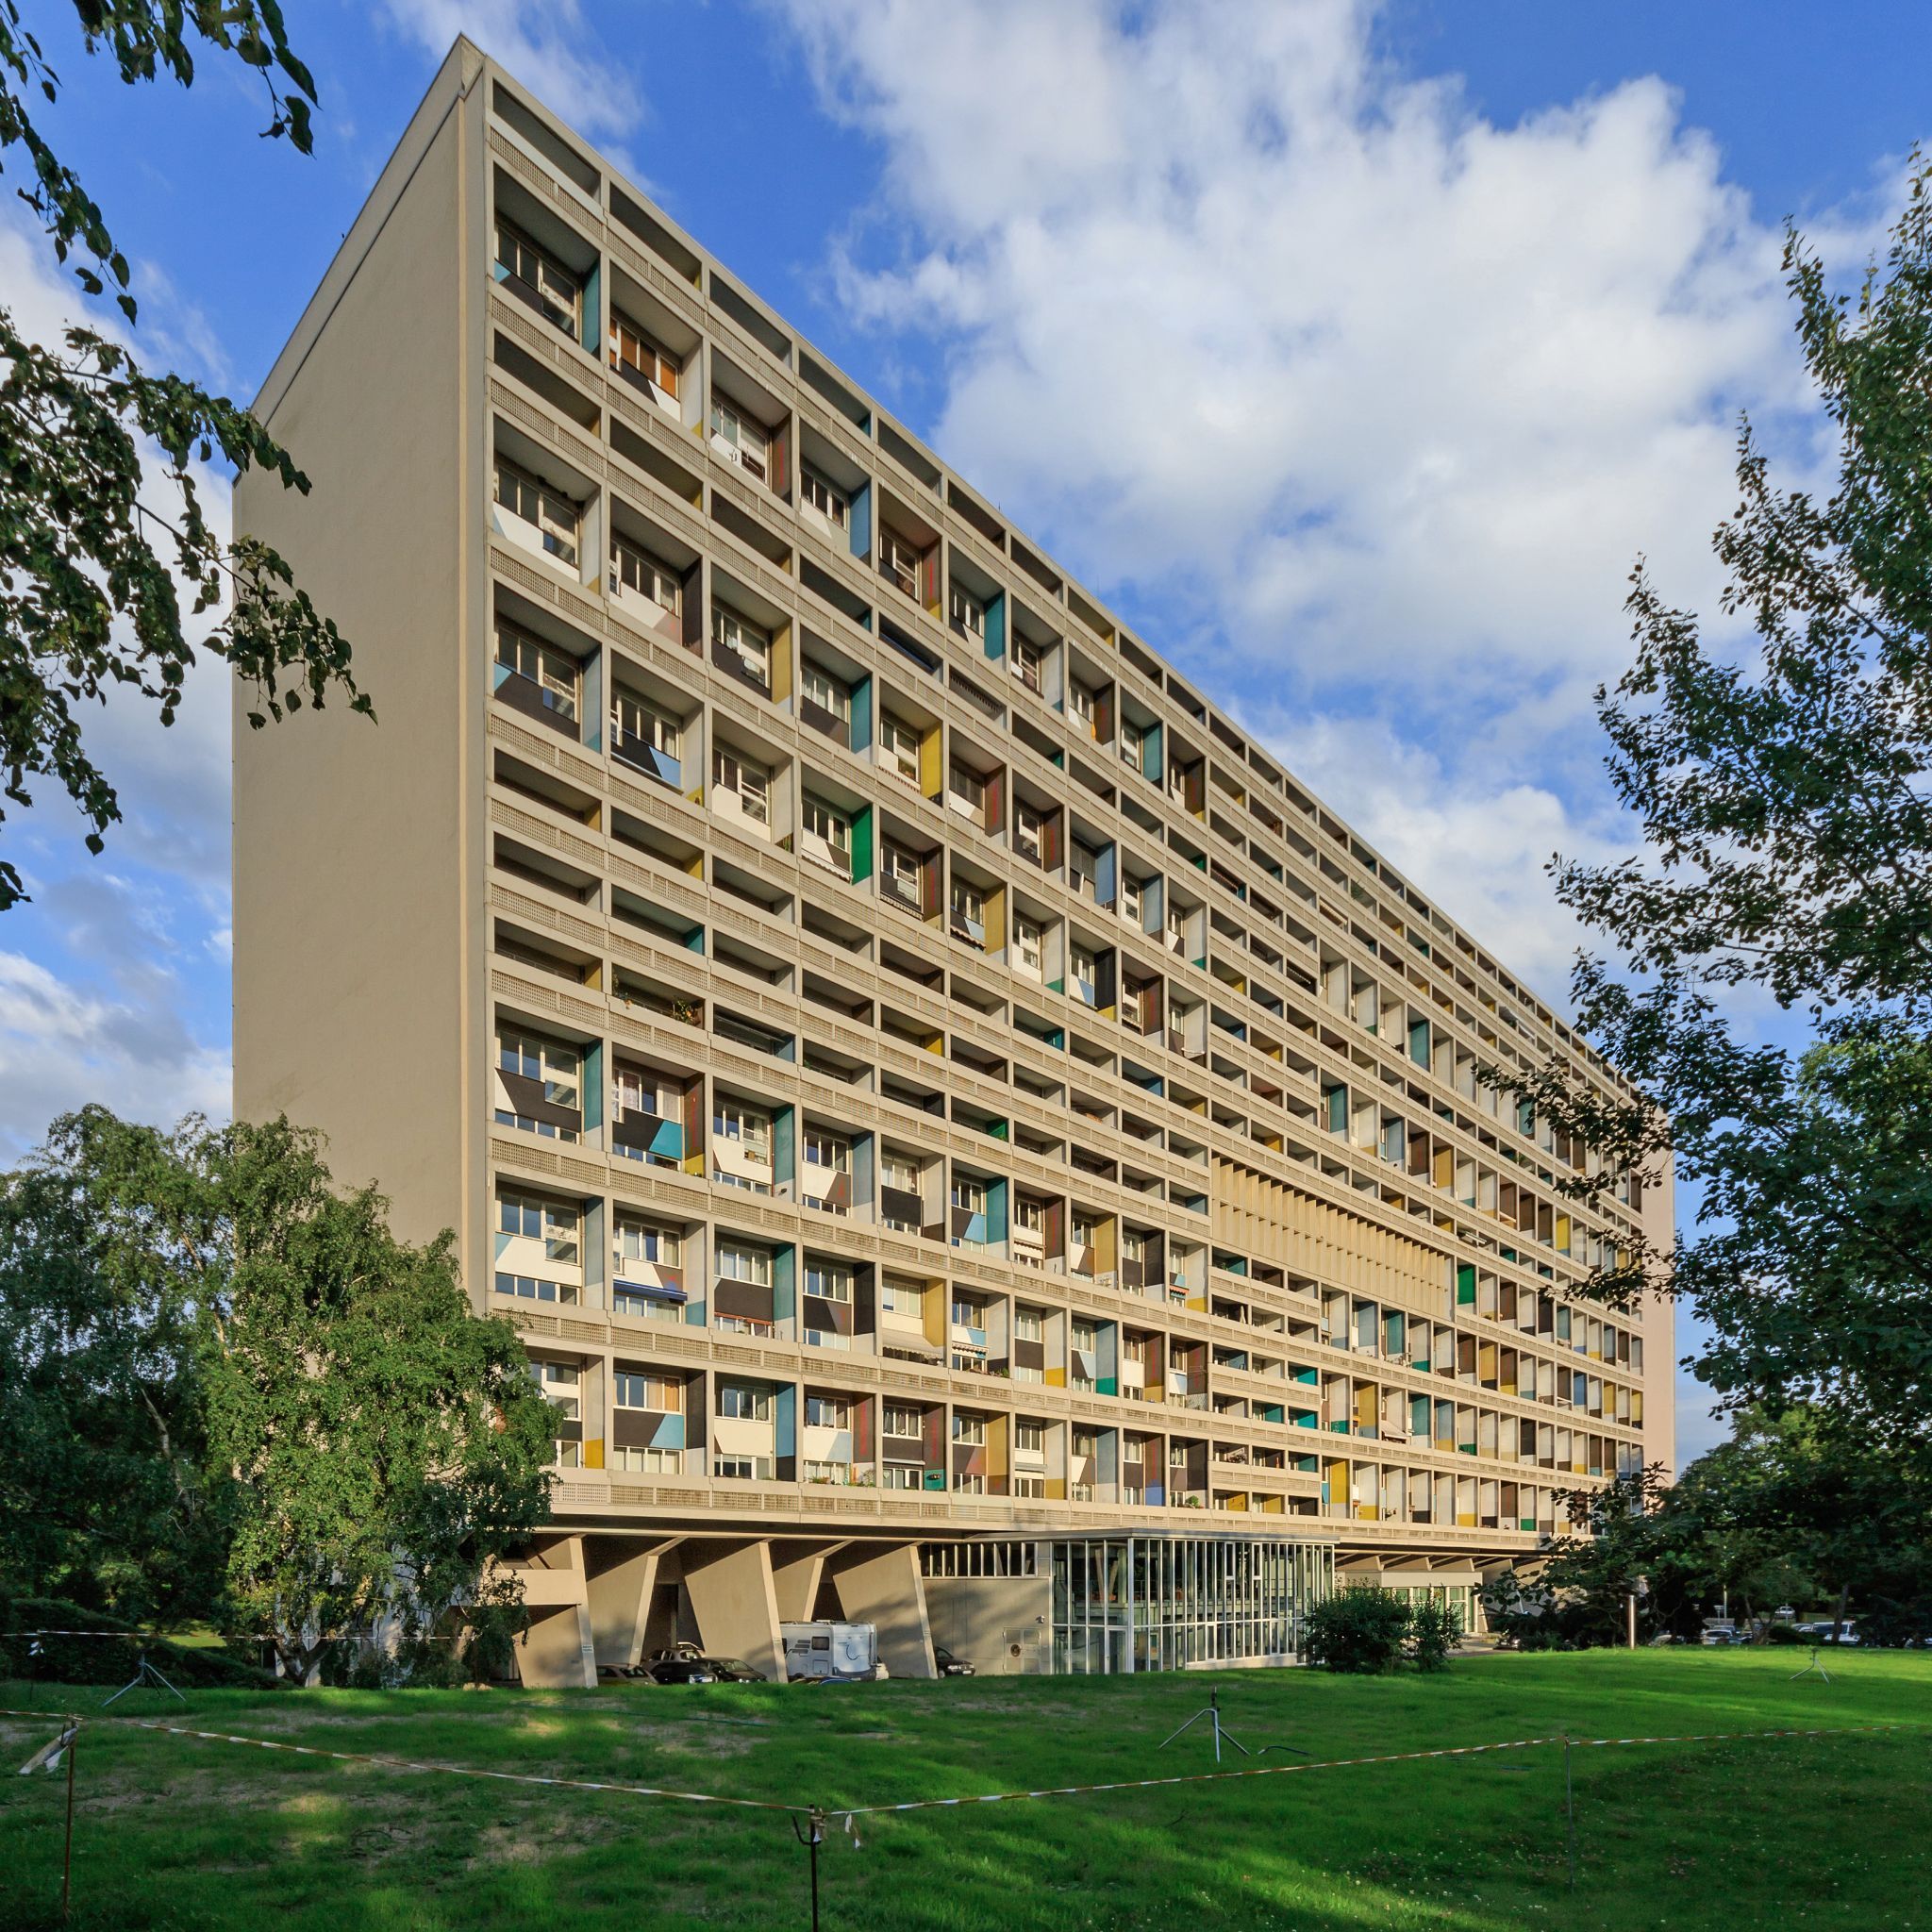  Unité d’Habitation designed by Le Corbusier